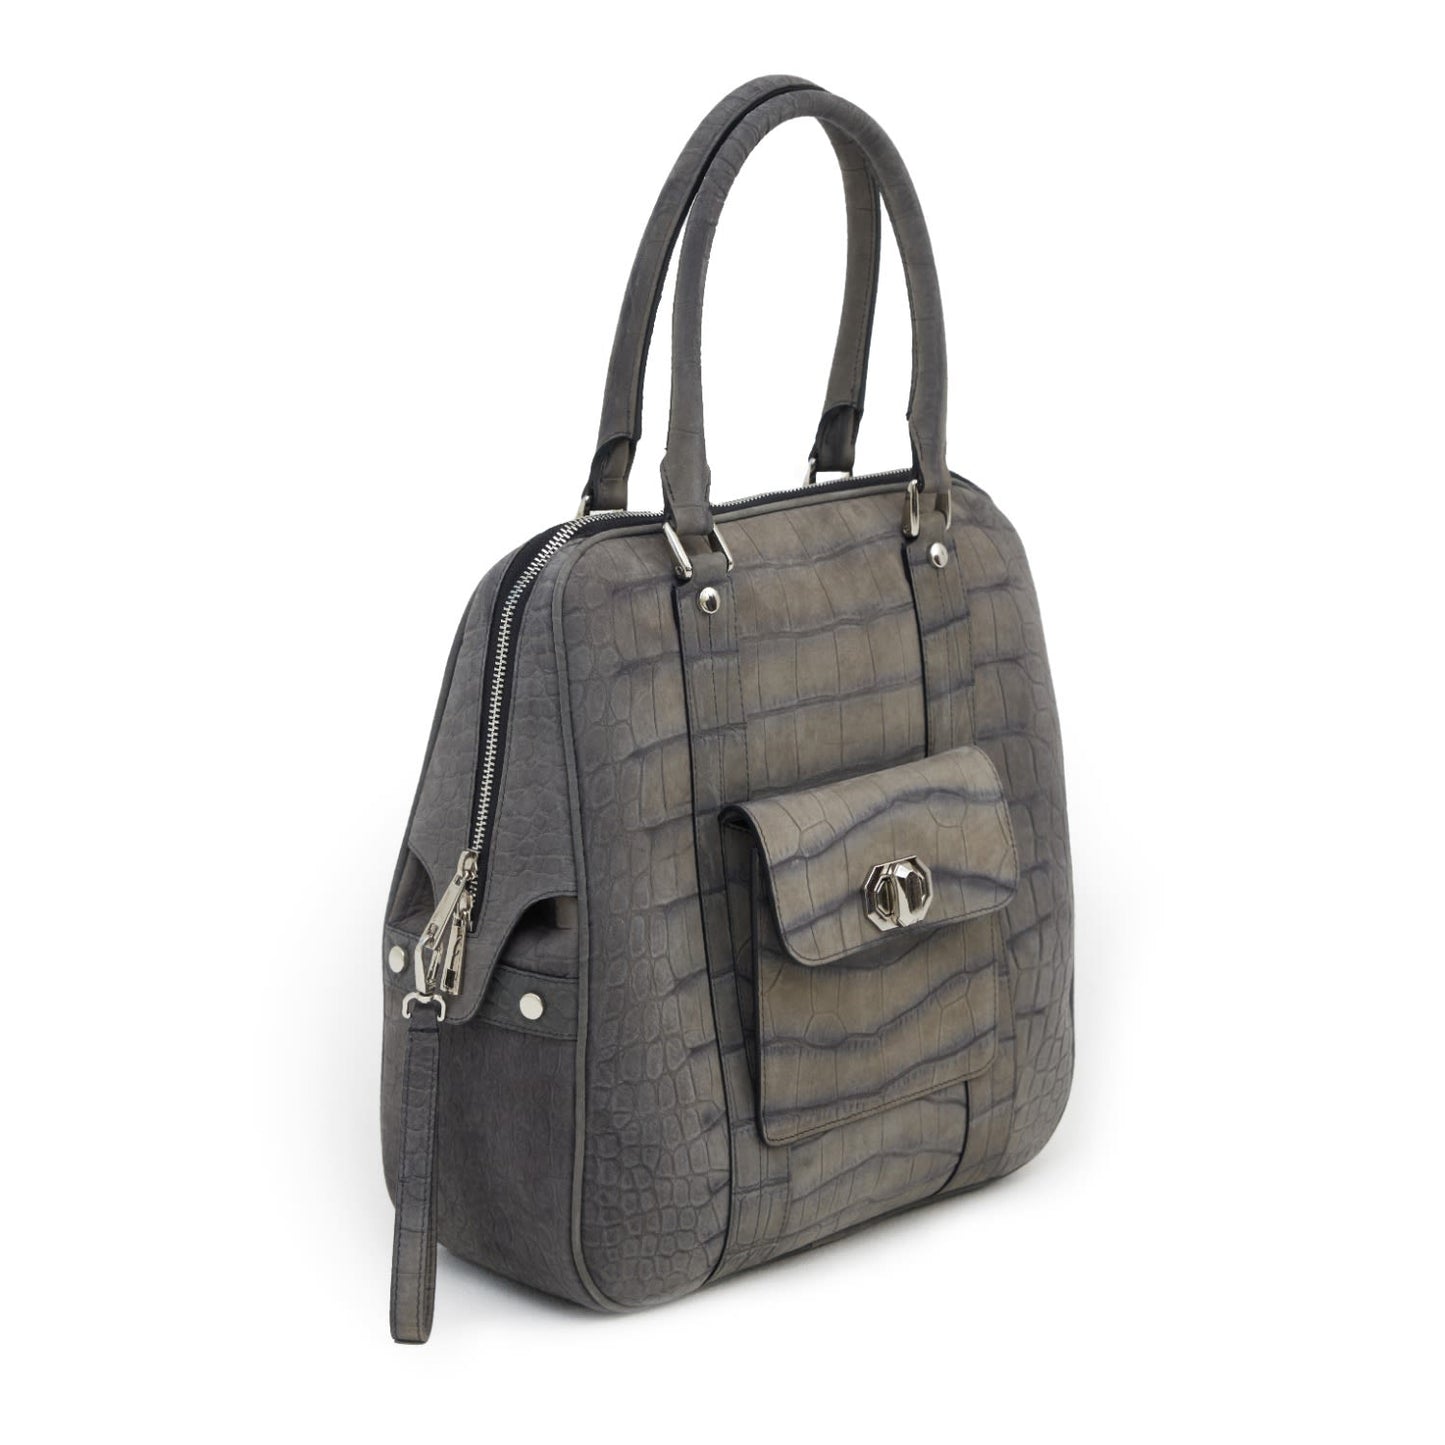 Croco Texture Leather Tote Handbag Grey Medium